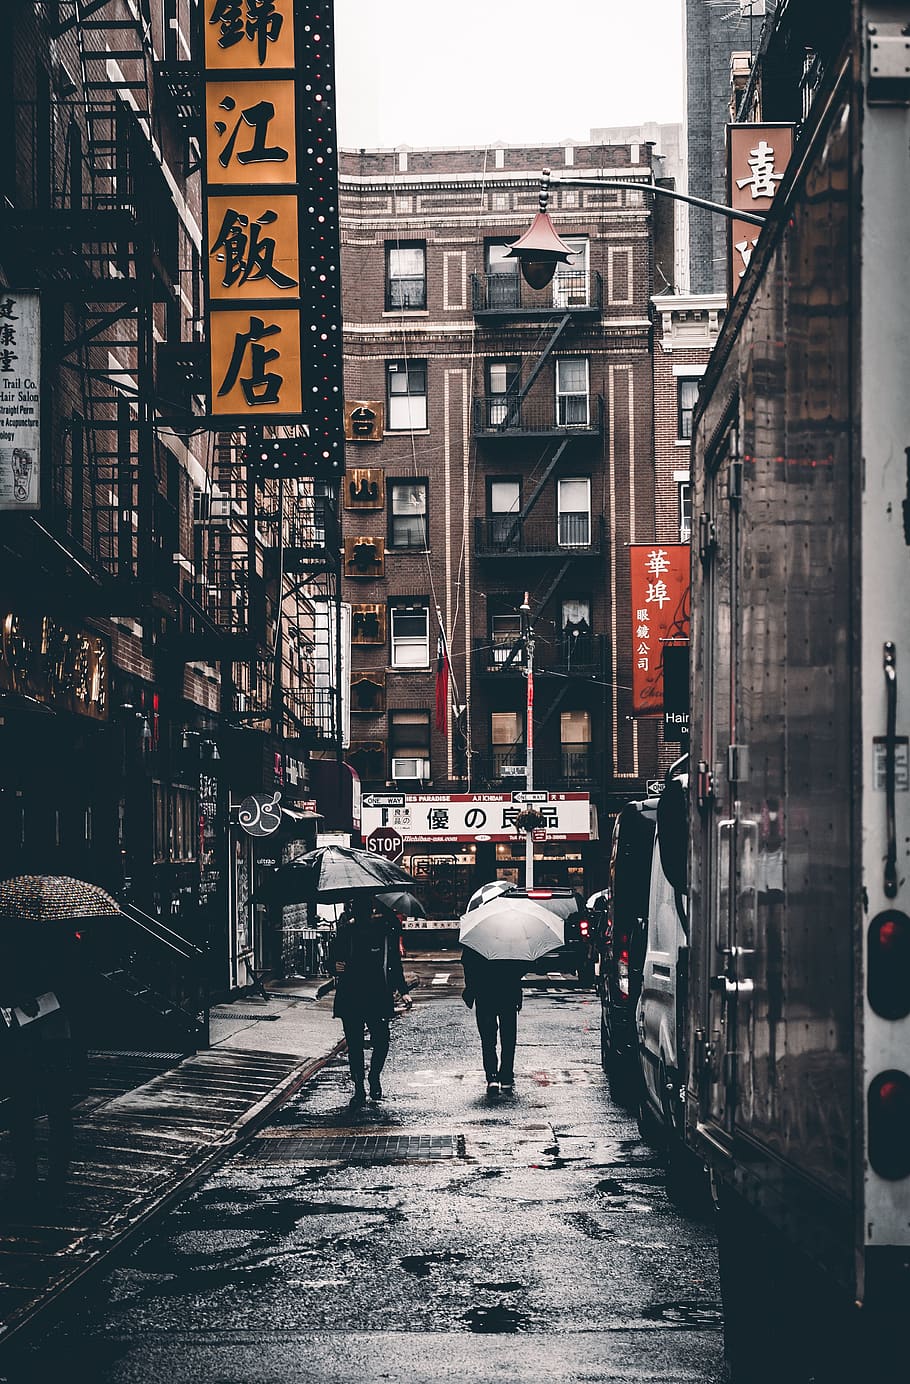 chinatown, caminhando, rua, chuva, molhado, urbano, beco, edifícios, arquitetura, pessoas